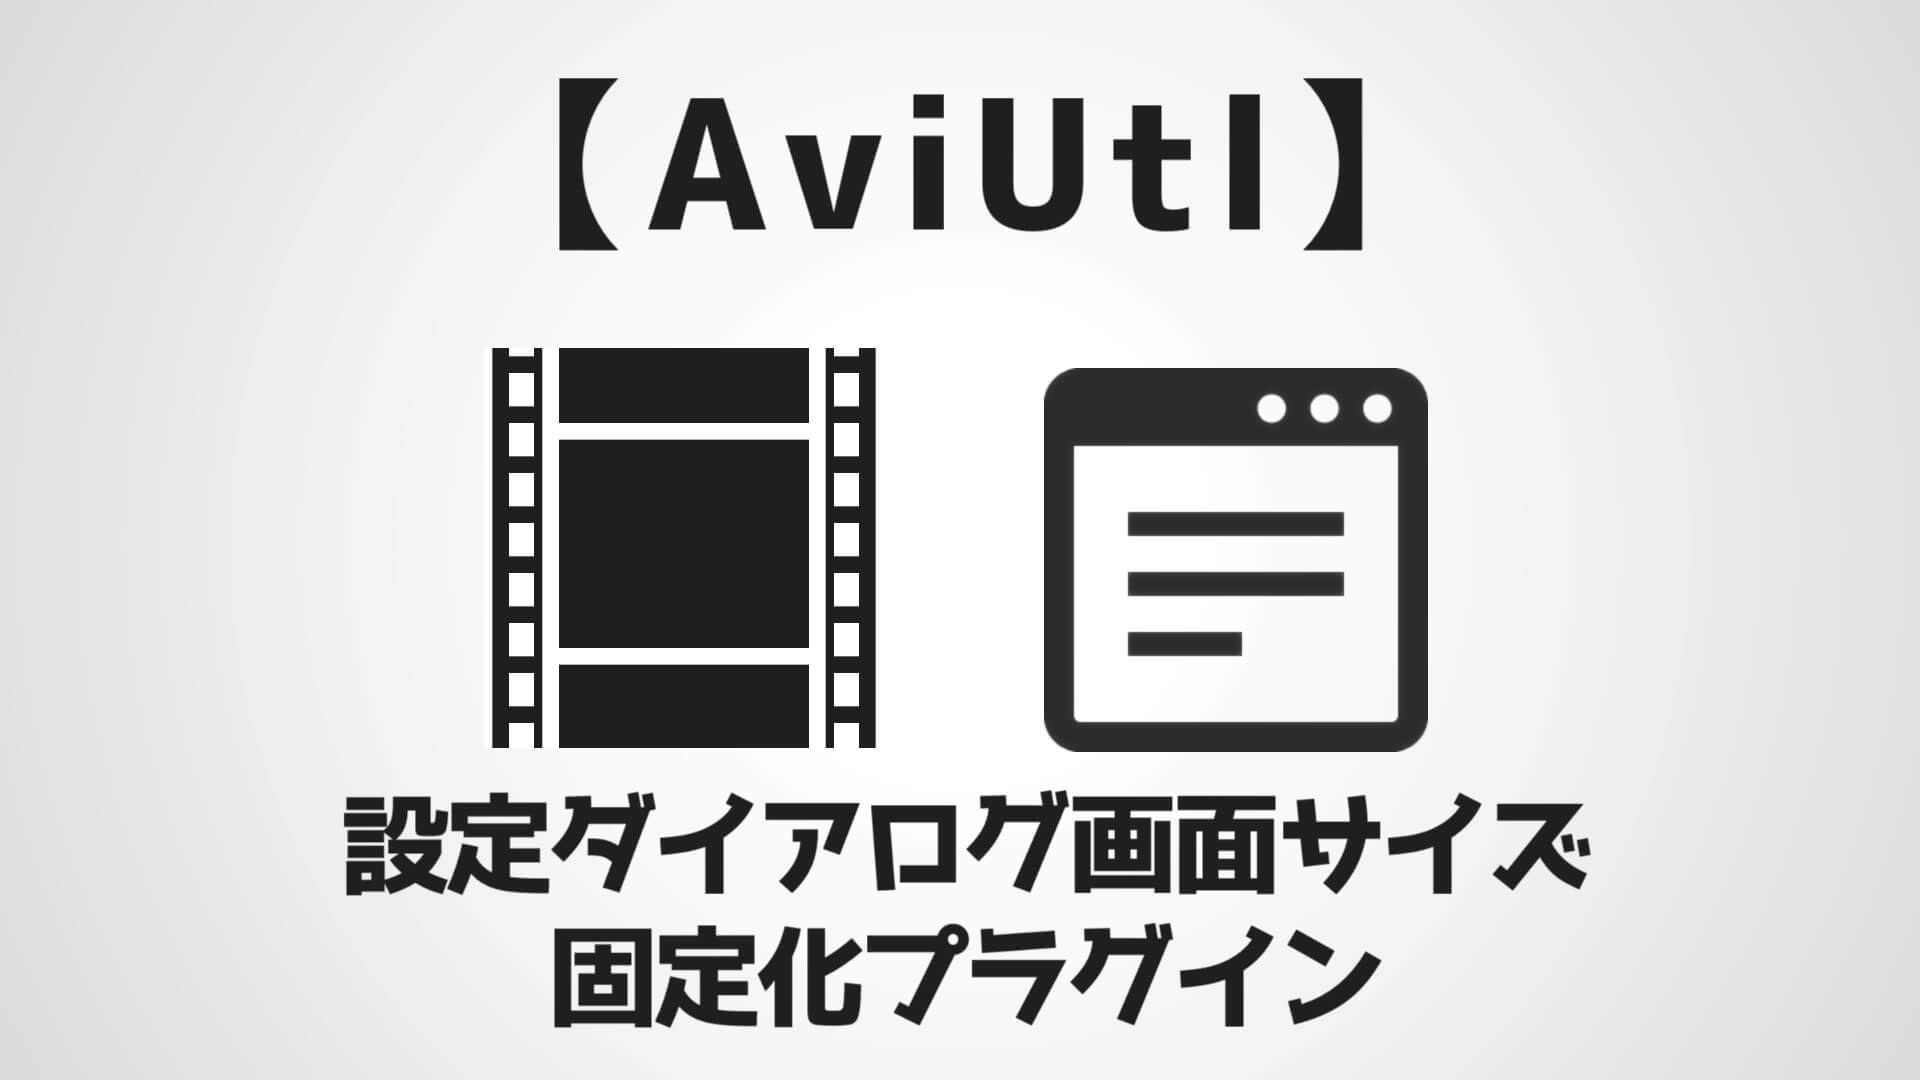 Aviutl 設定ダイアログの画面サイズを固定化するプラグイン 導入 使い方 Aketama Official Blog